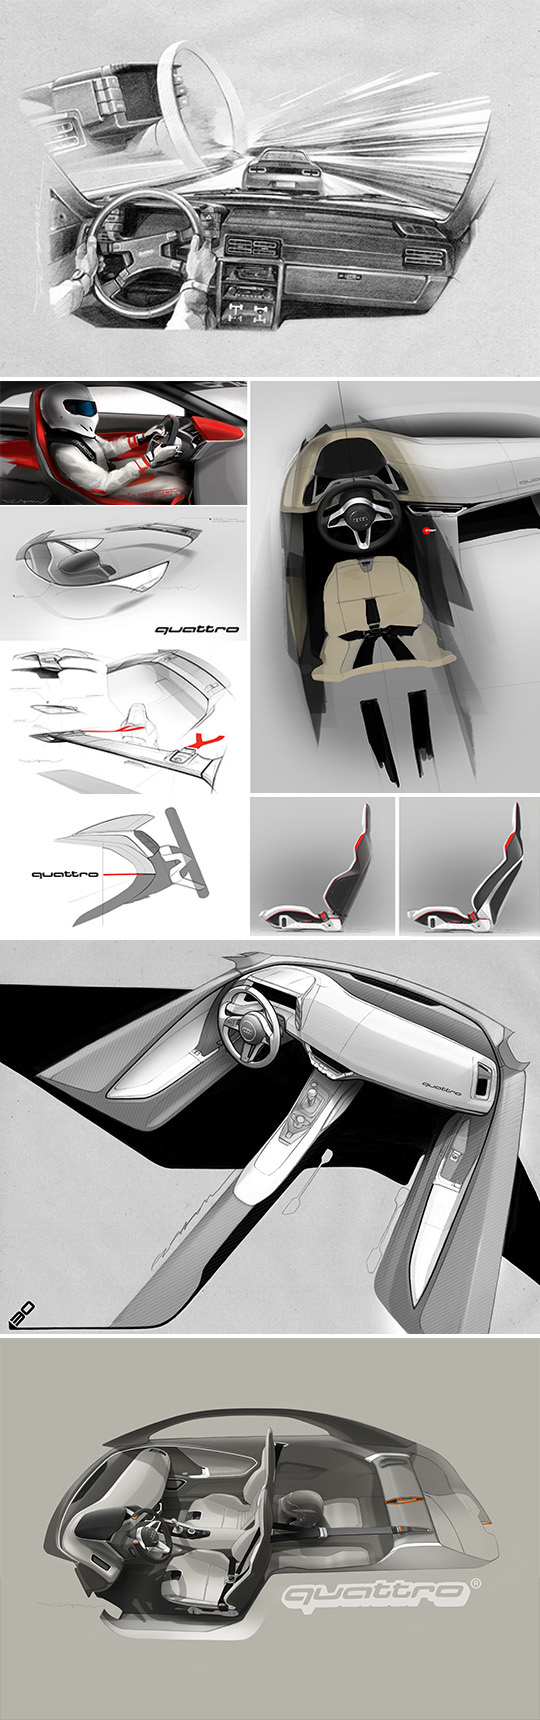 Audi quattro Interior design concept design munich prototype showcar